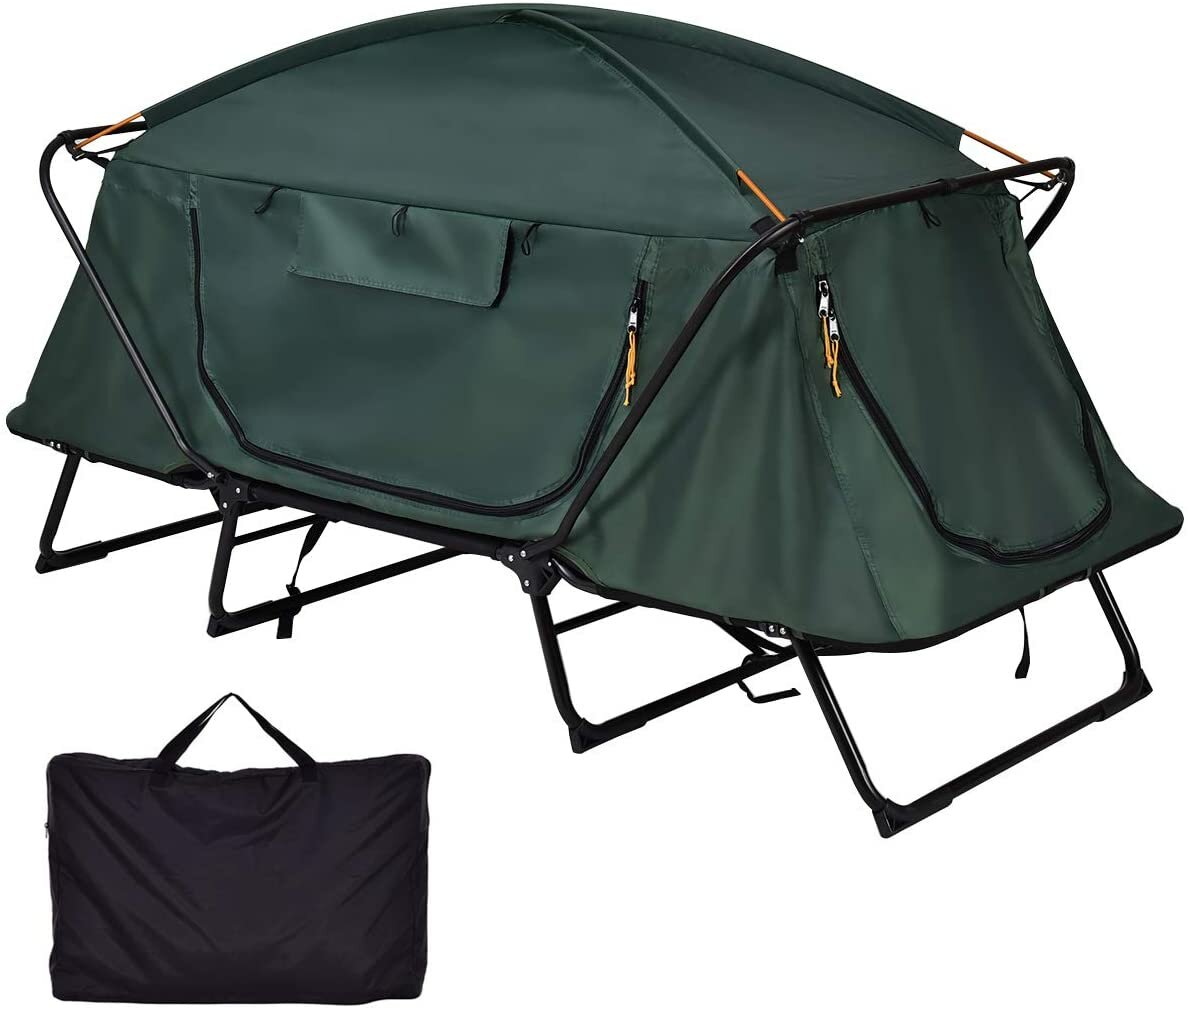 2人用キャンプテント、グラウンドオフ、折りたたみ式、防水、二重層、防寒、防風、日除けドーム、キャリーバッグ付きハイキング、旅行用。